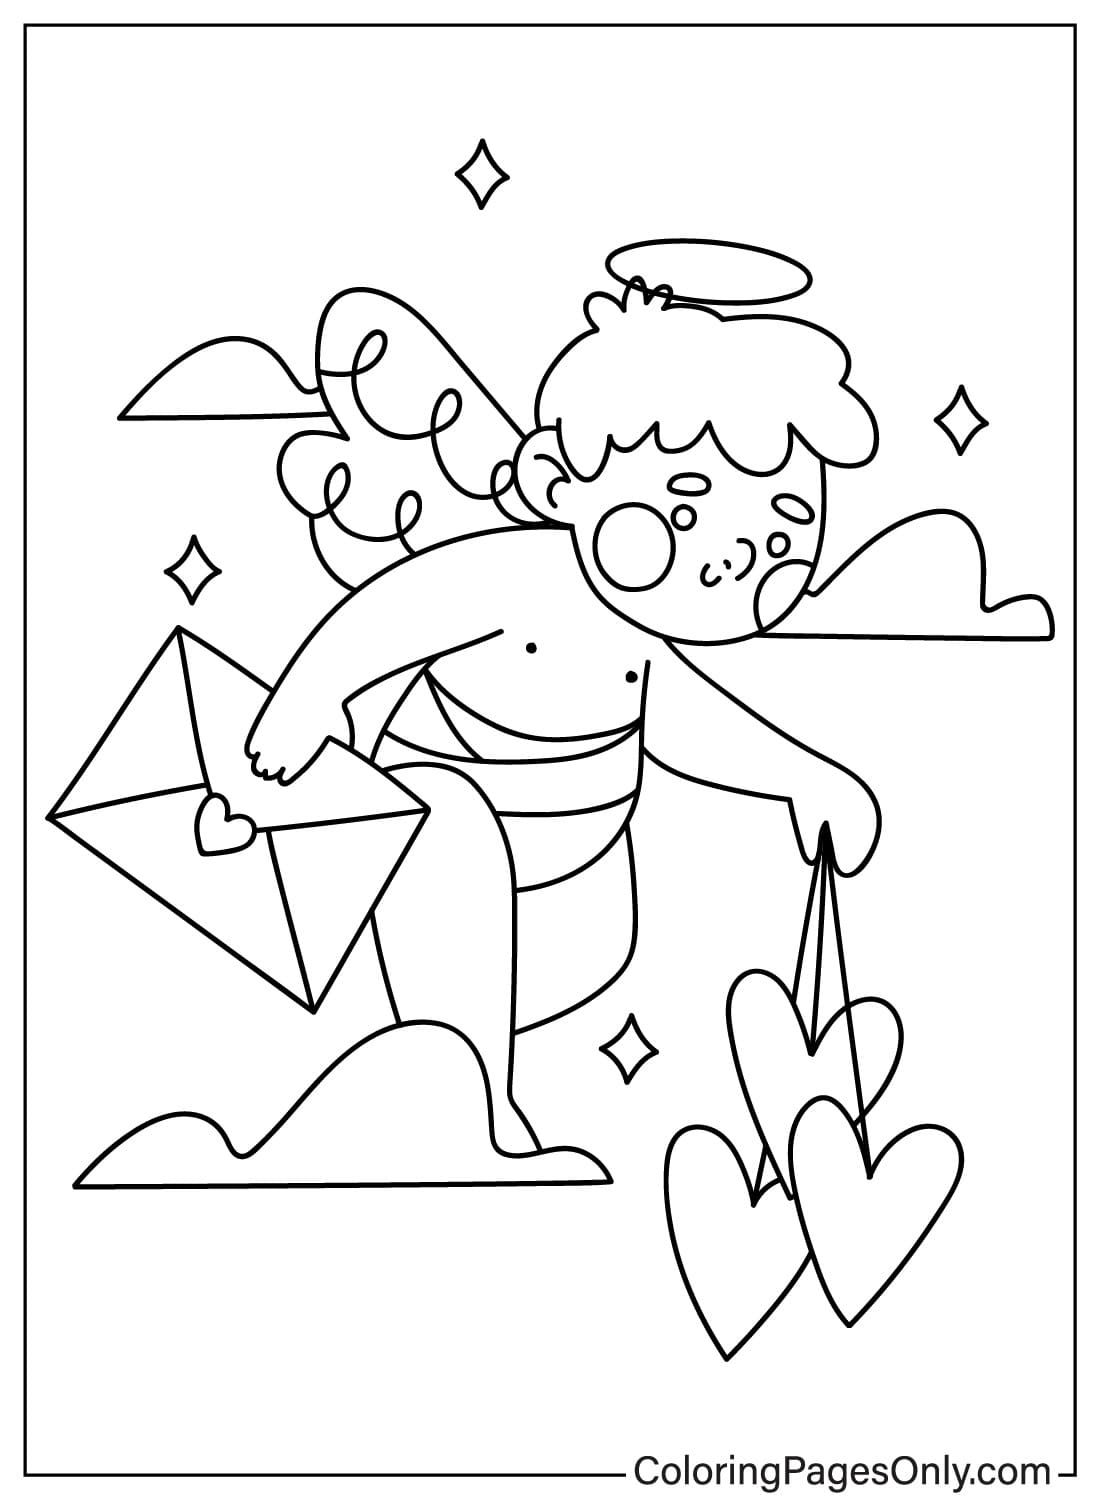 Página para colorear de Cupido para imprimir desde Cupido